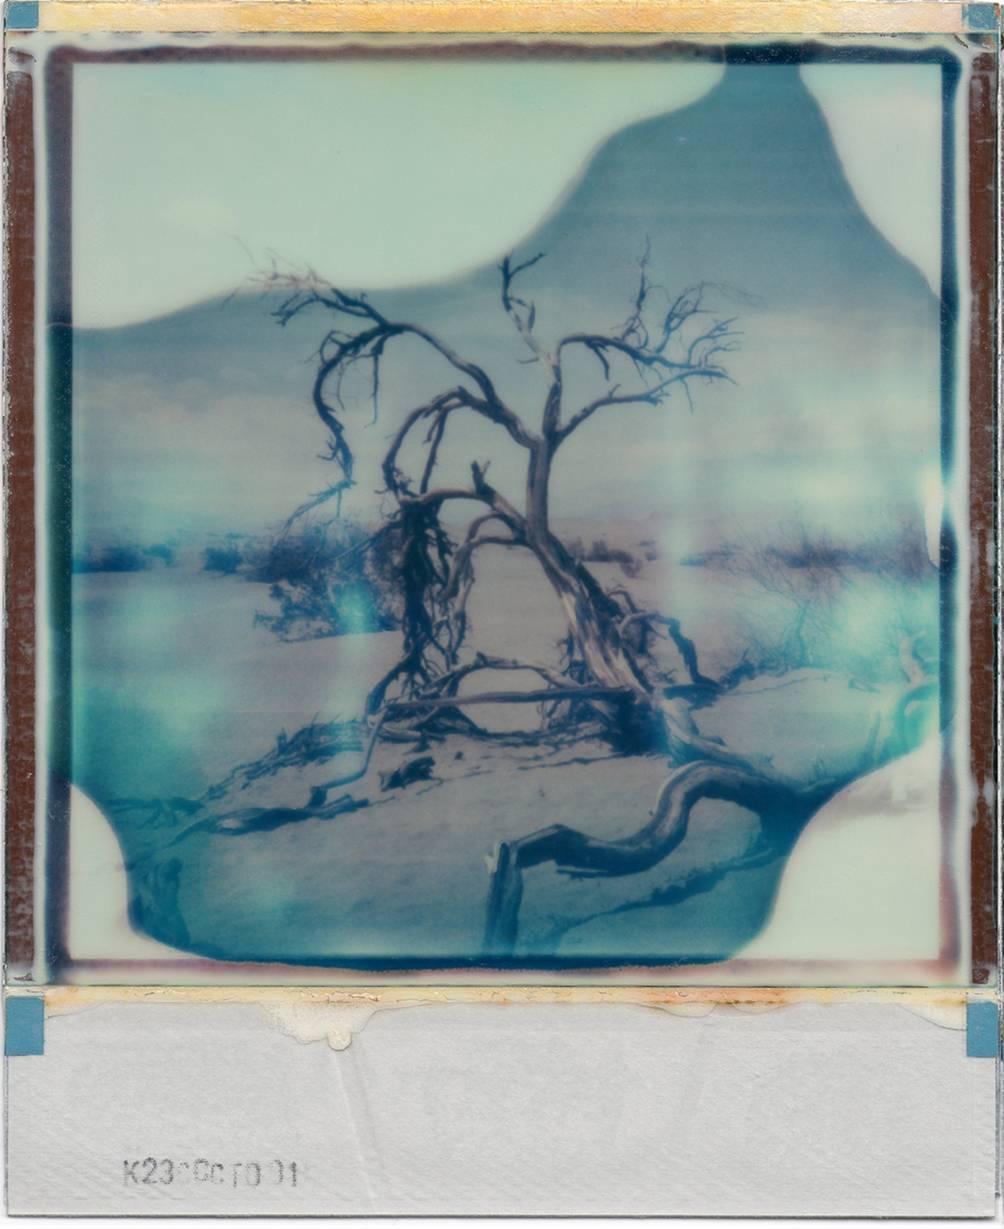 Desert Dream - based on 2 Polaroids - Photograph by Julia Beyer